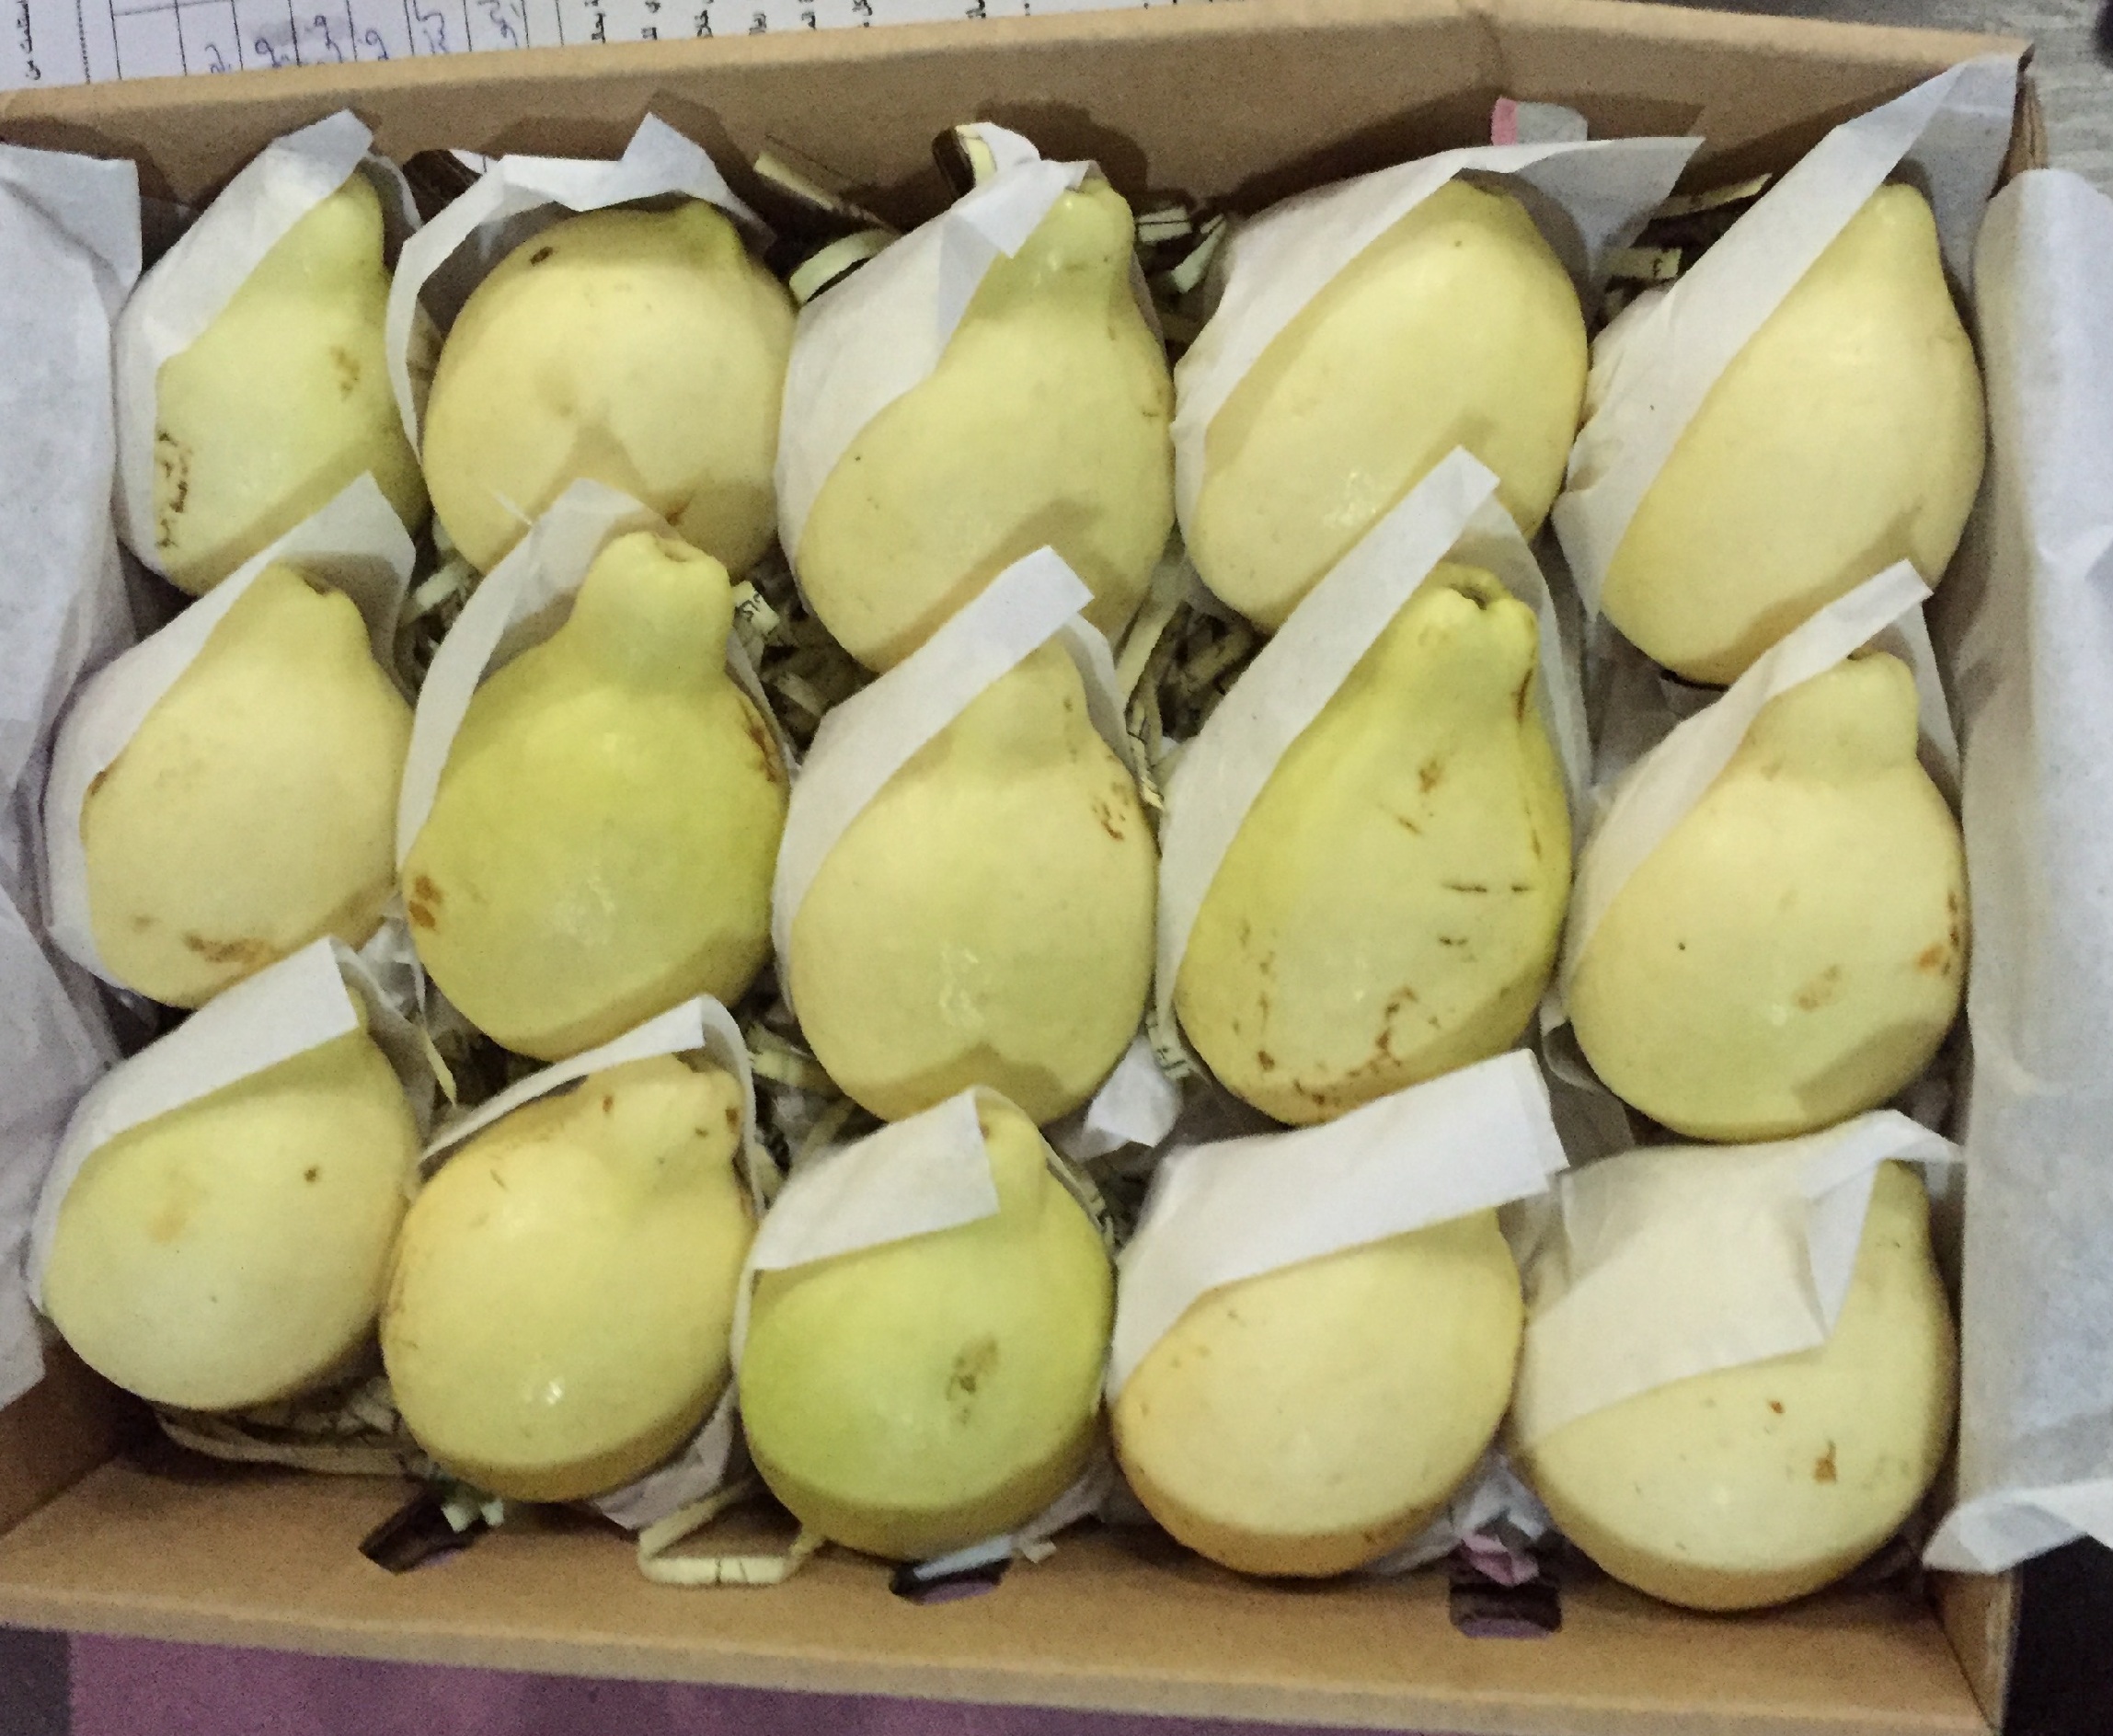 حظر استيراد الجوافة المصرية مؤقتًا